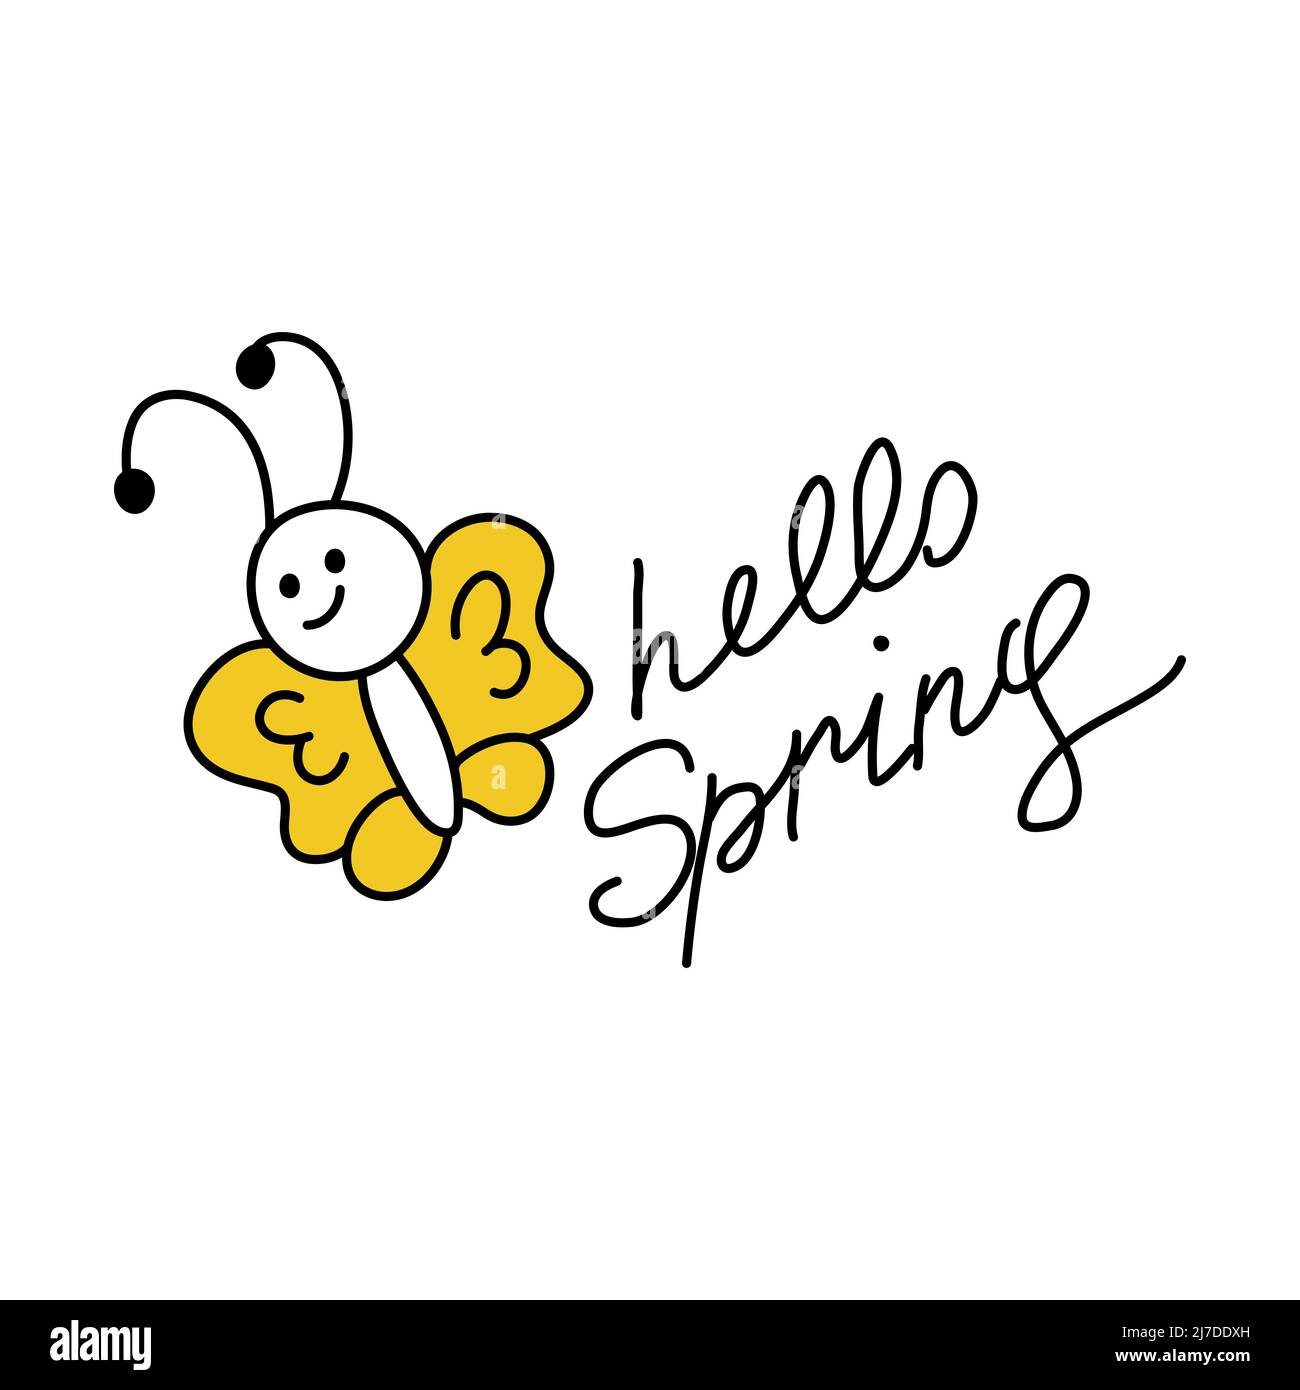 Doodle-Schriftzug mit dem Satz Hello Spring. Schlampige Kinderinschrift. Niedliche lustige Schmetterling. Eine einfache Ikone des Stils von 90s. Cliparts zum Bedrucken von Aufklebern und Grußkarten. Stock Vektor